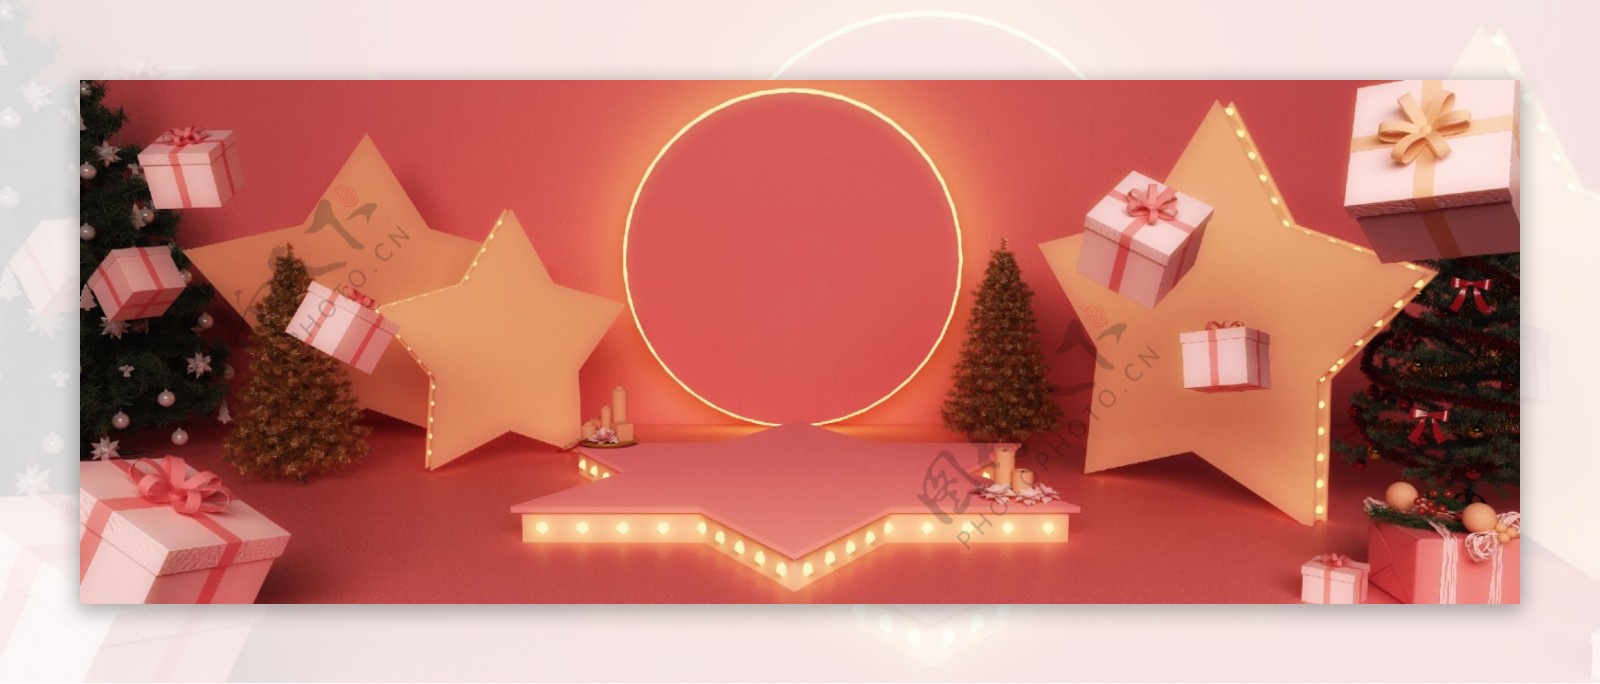 全原创3D立体舞台空间圣诞活动礼包背景